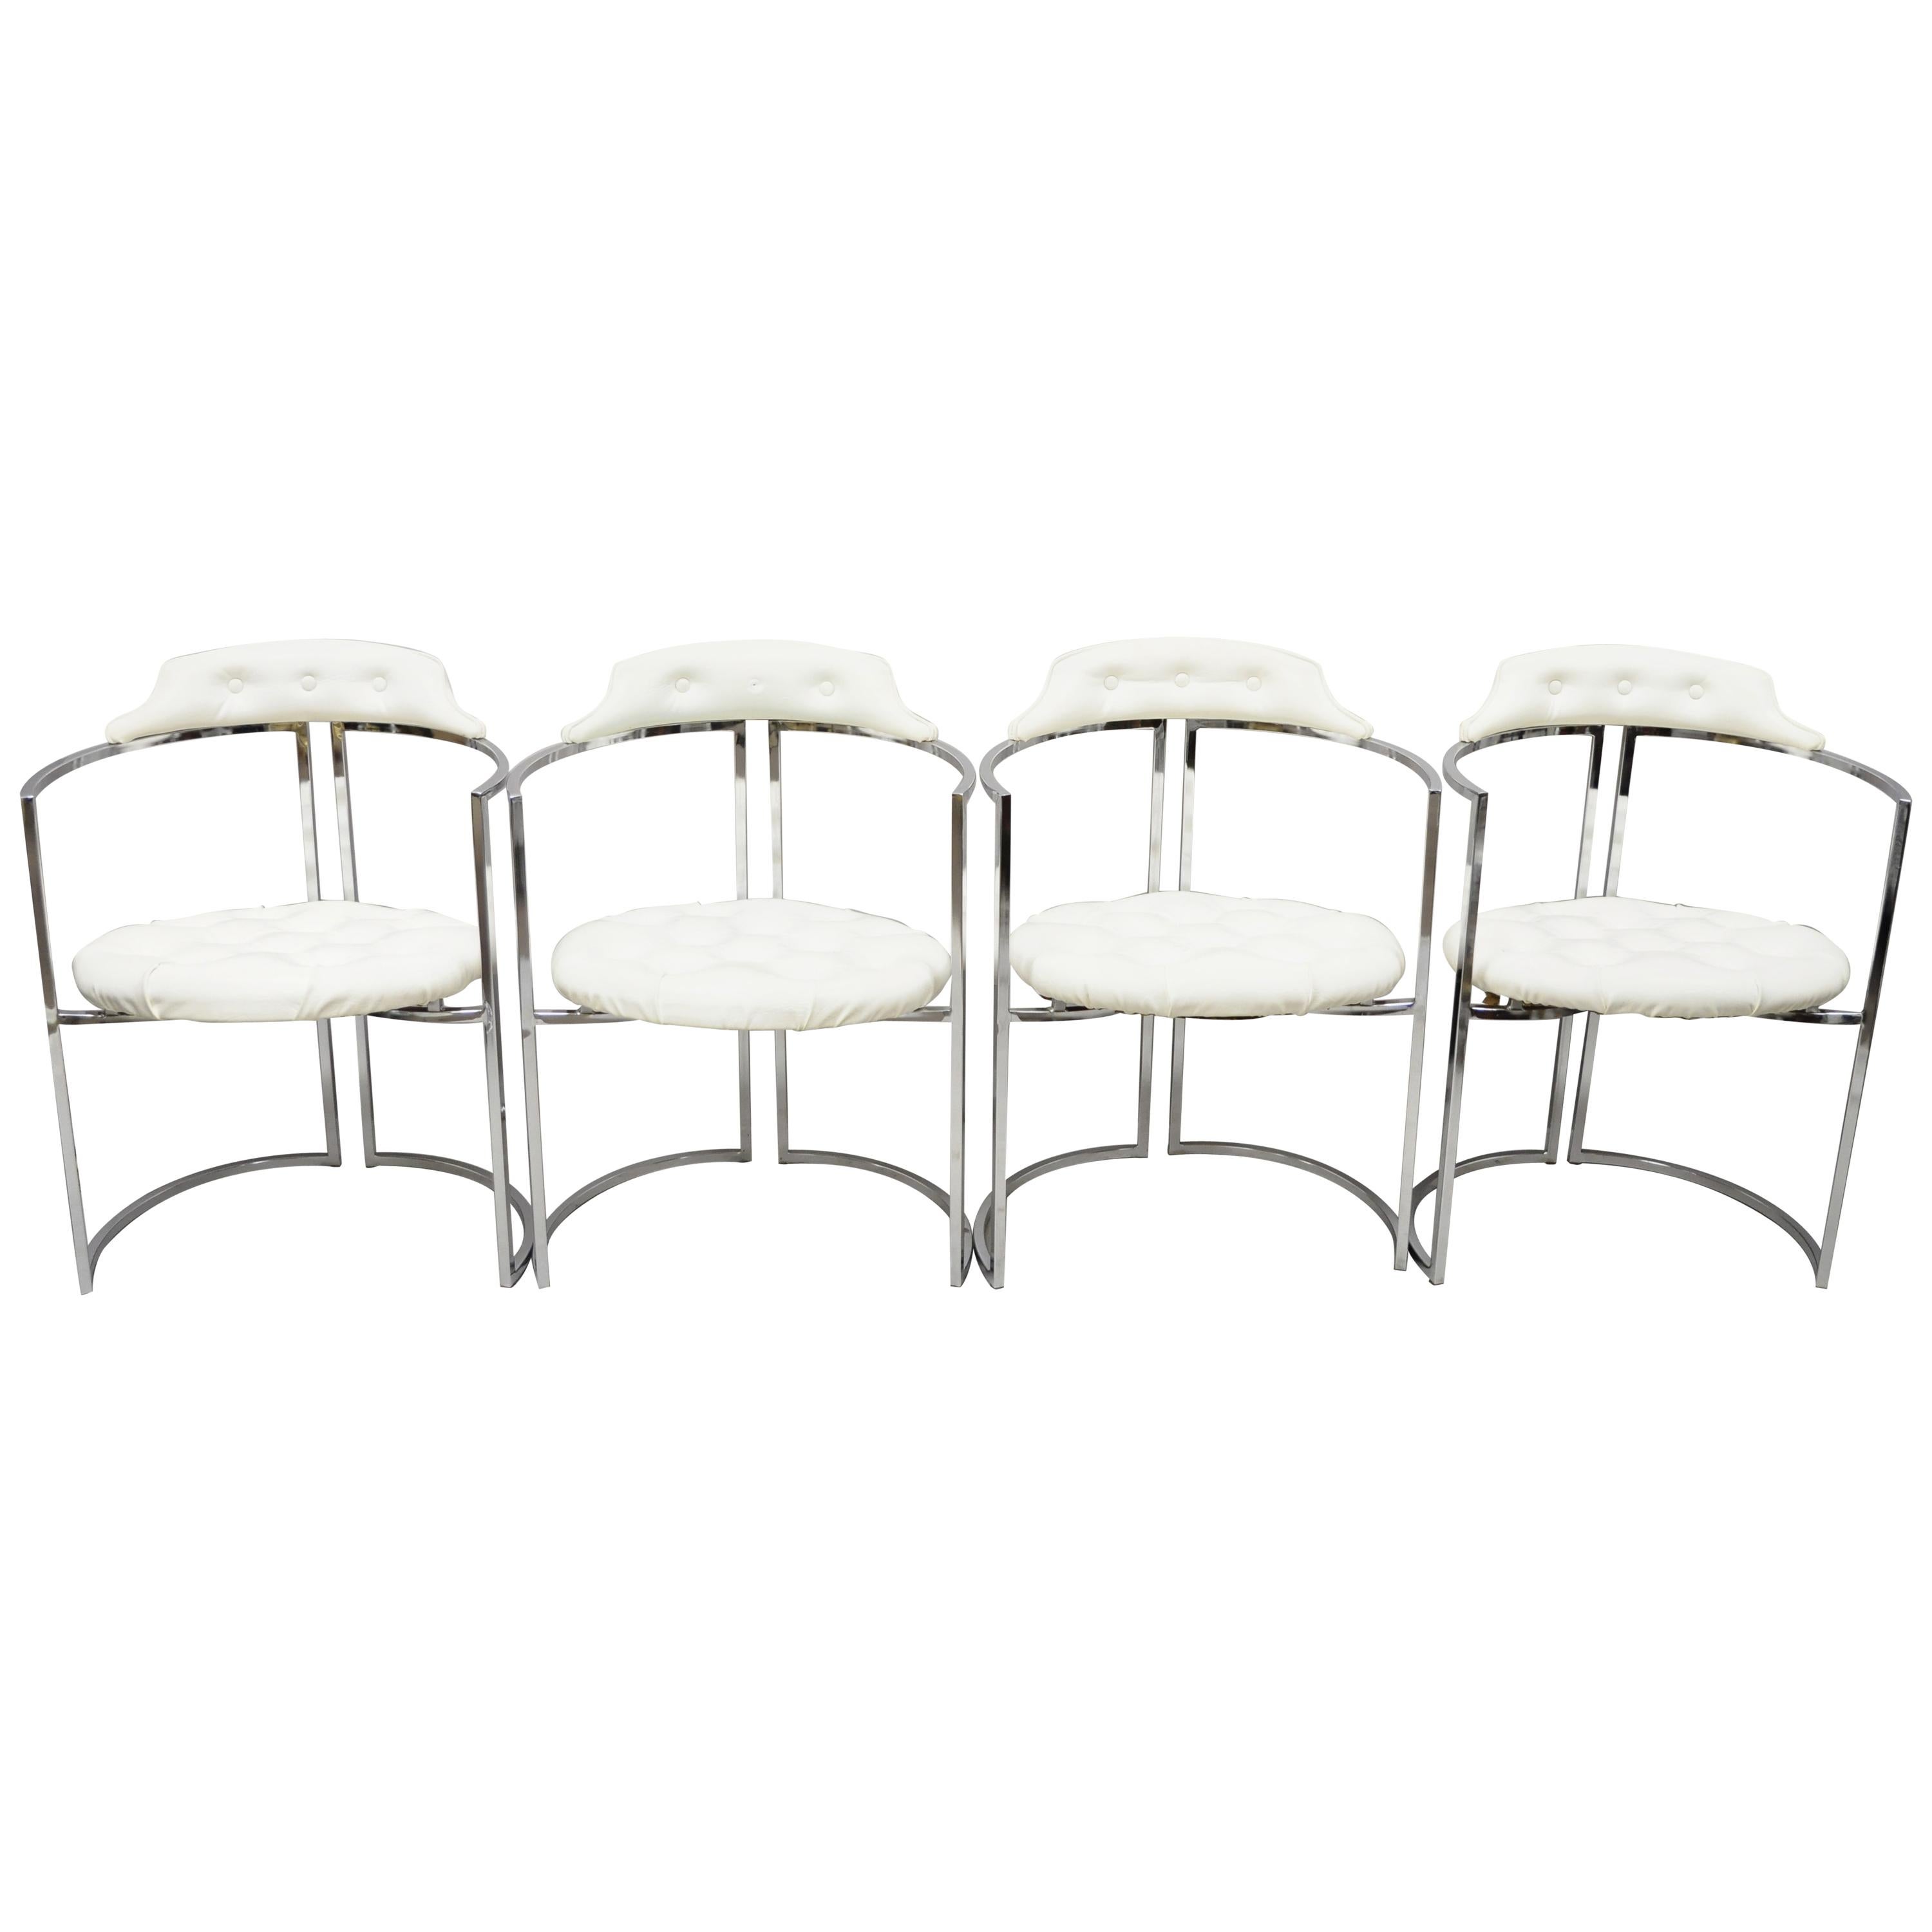 Chromcraft Midcentury Chrome Frame Barrel Back White Vinyl Chairs, Set of 4 For Sale